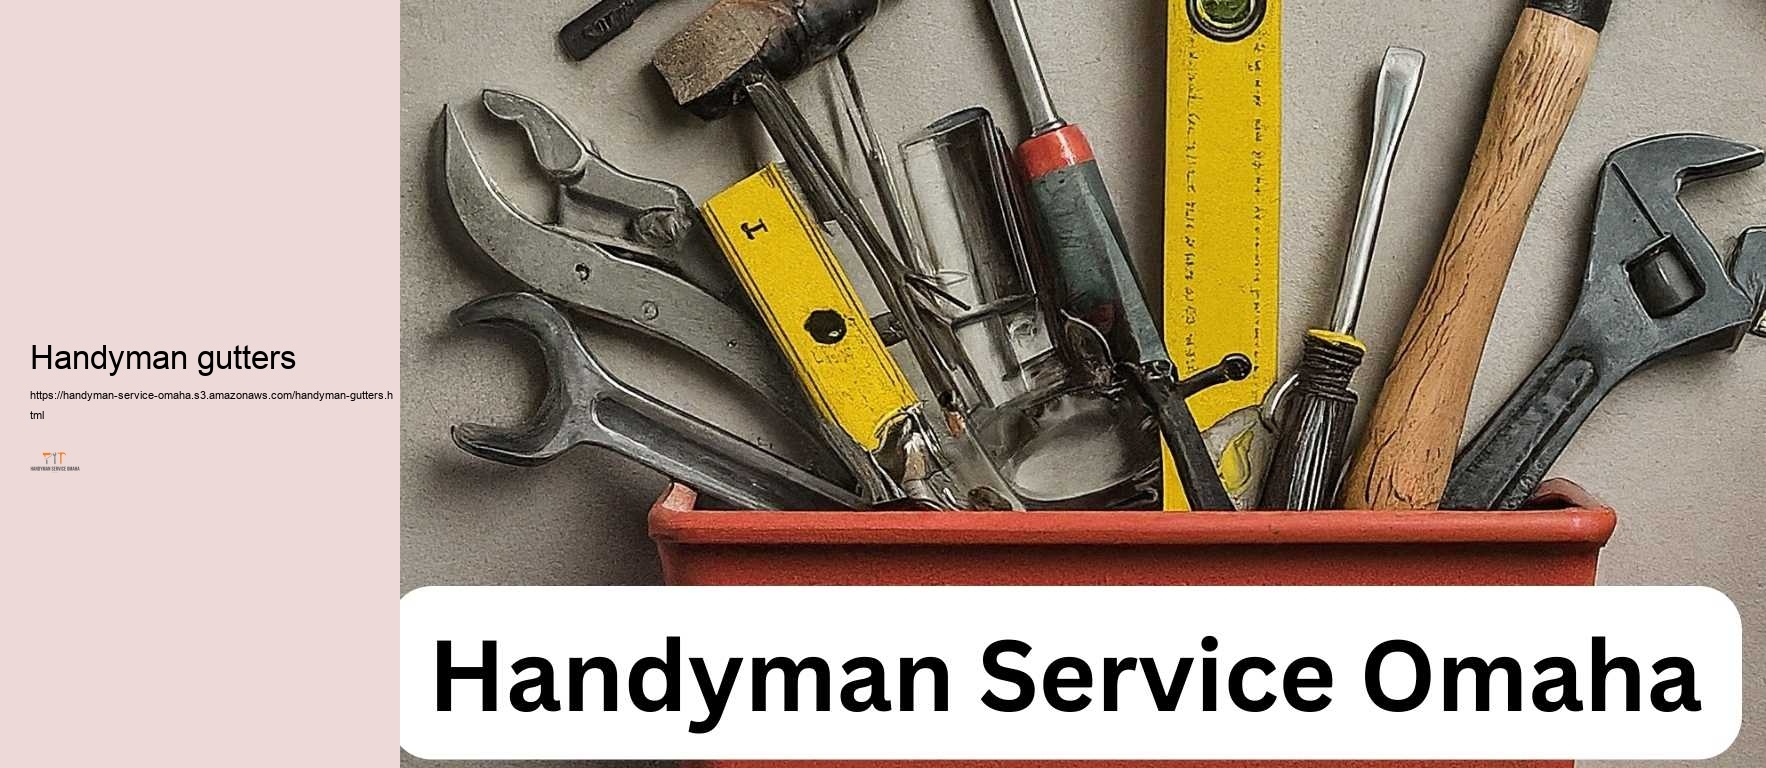 Handyman gutters